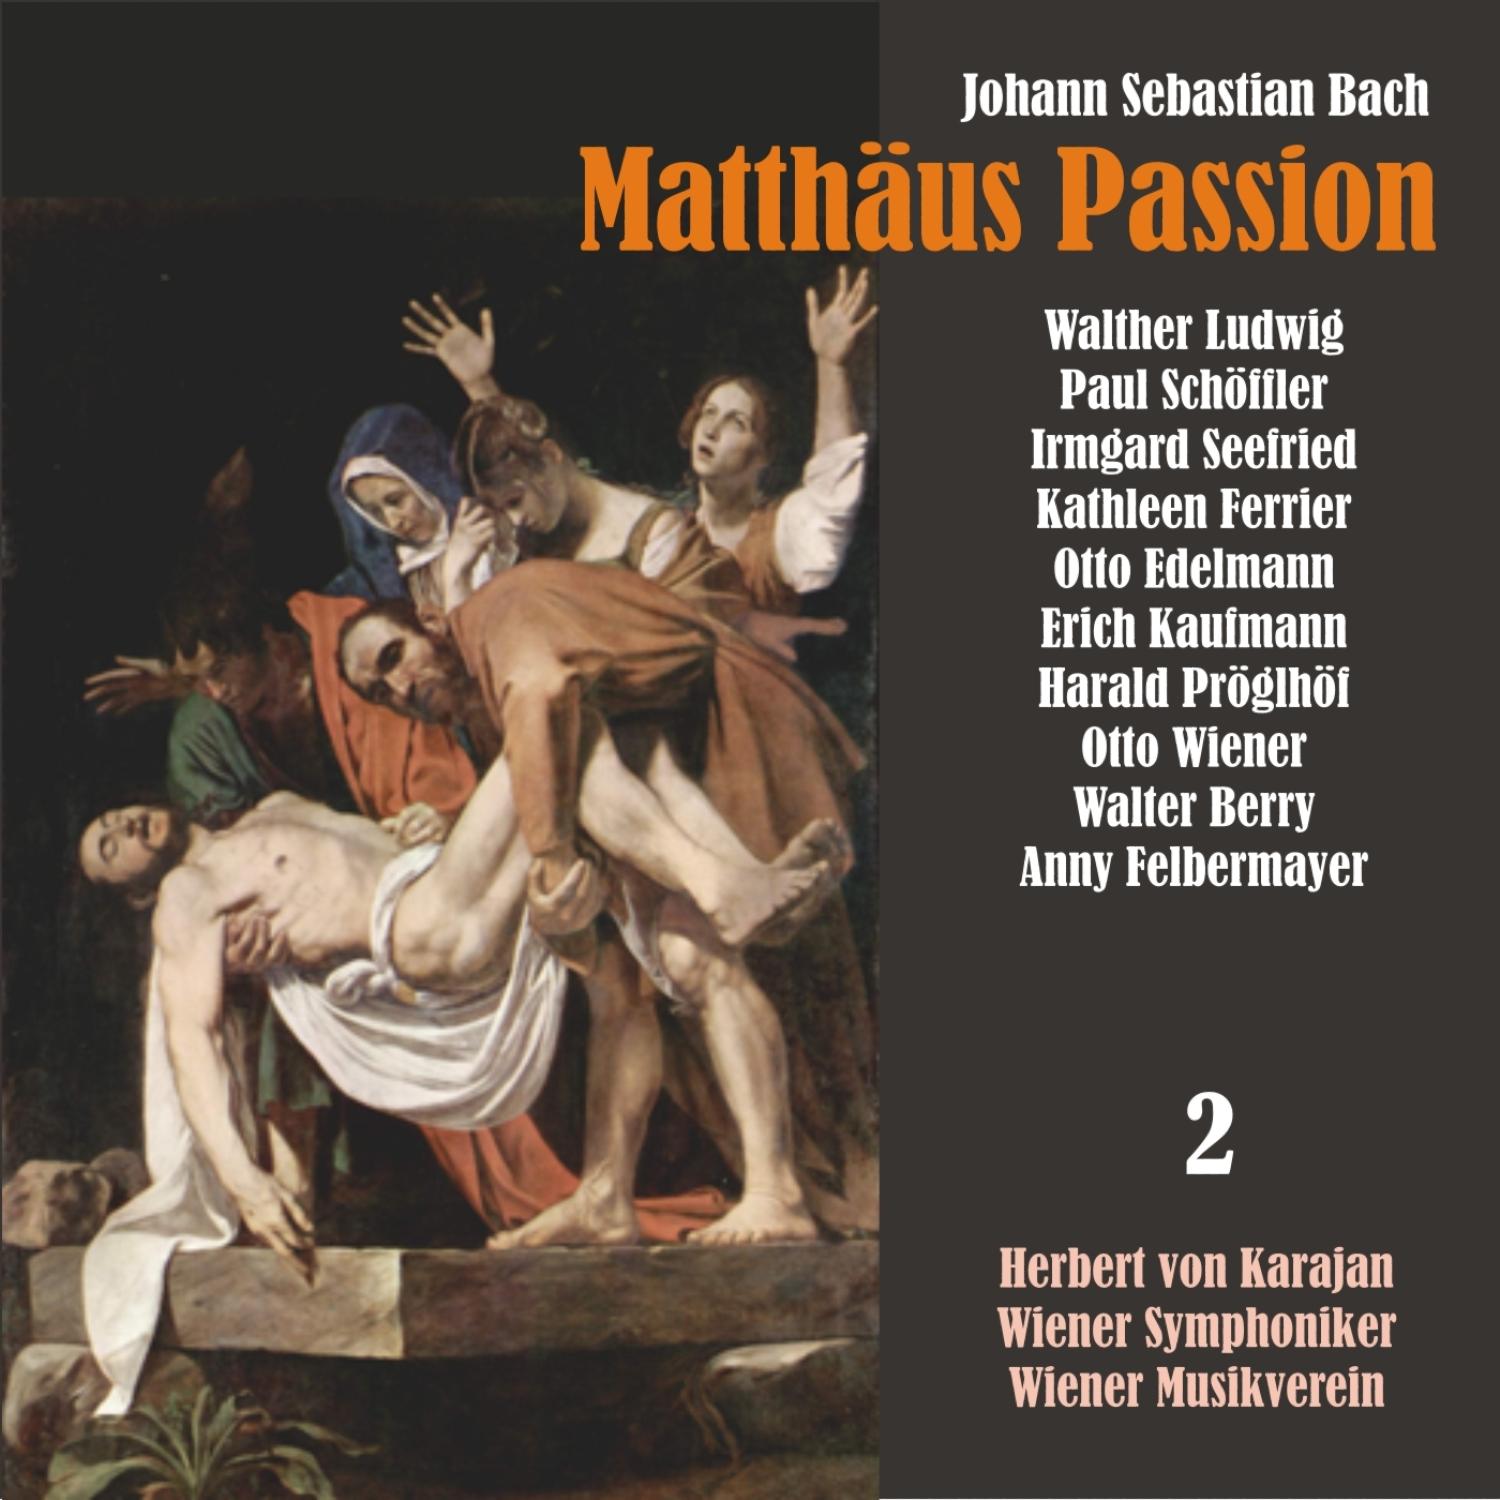 Matthäus Passion, BWV 244: "Befiehl du deine Wege"